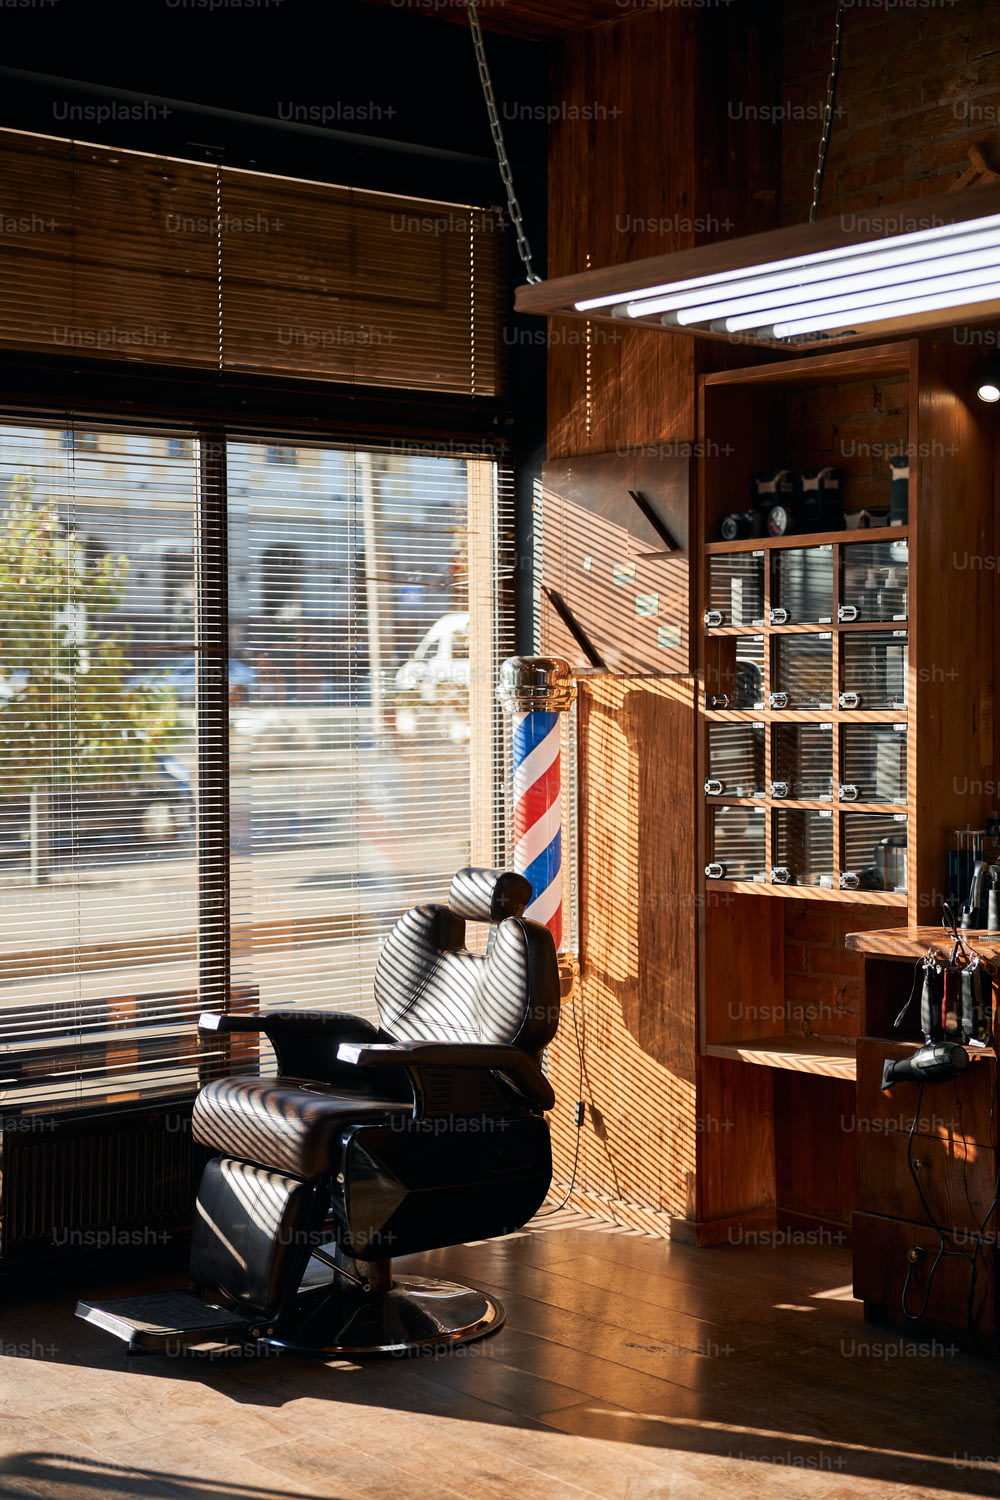 Fauteuil de barbier inclinable en cuir avec appui-tête réglable situé près de la fenêtre avec stores dans un salon de coiffure